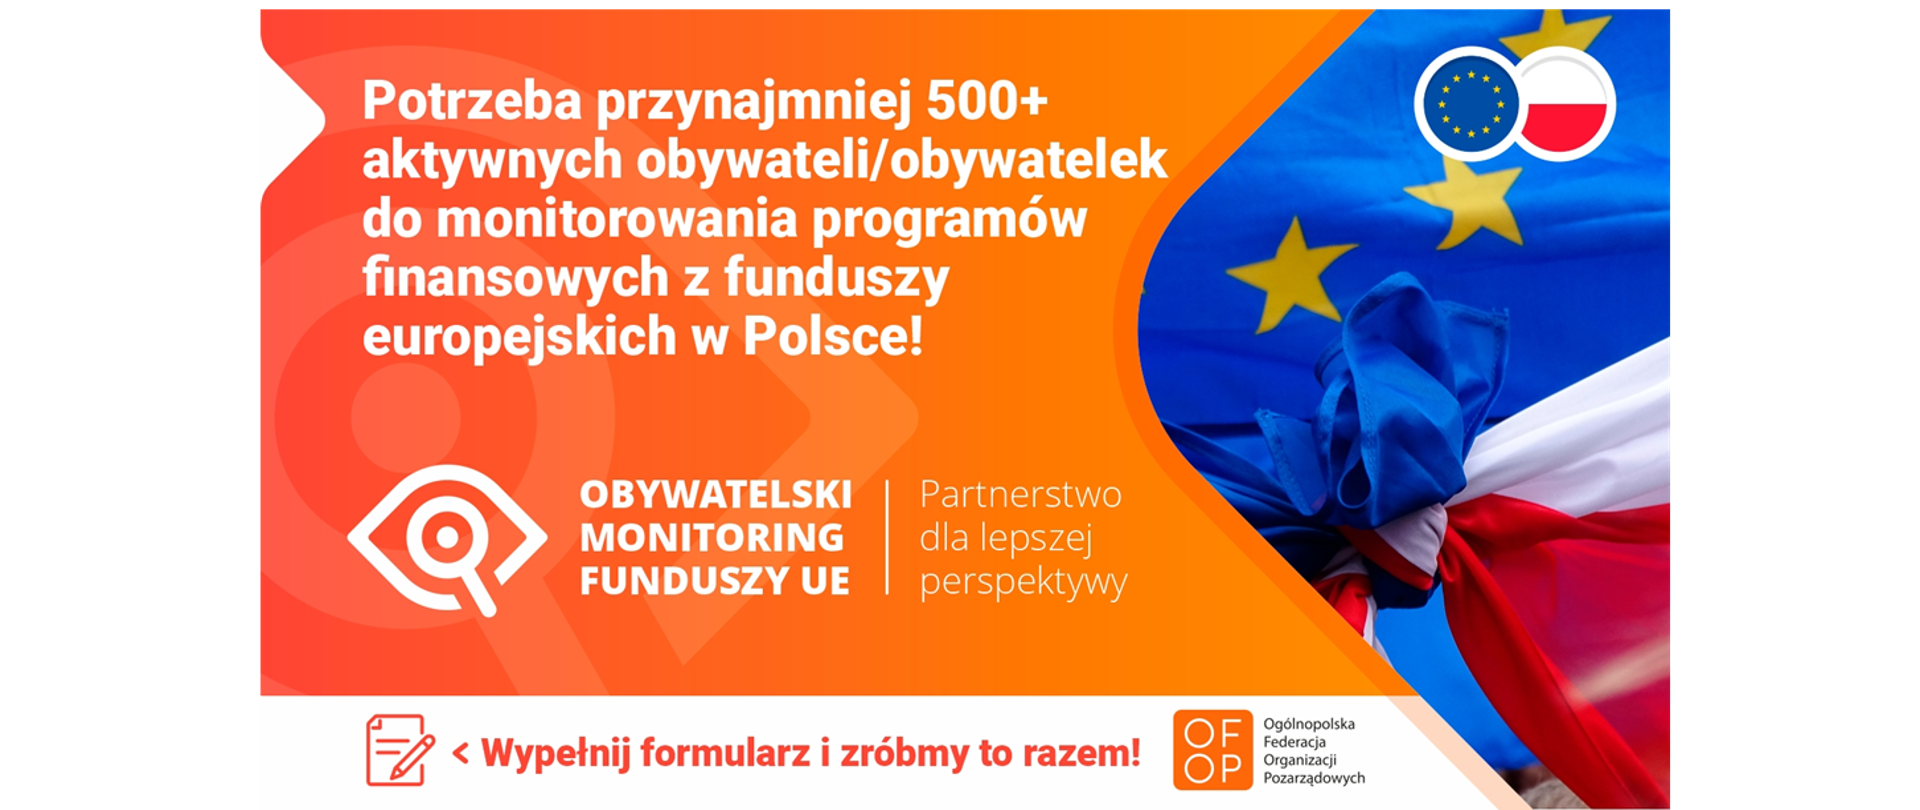 grafika Ogólnopolskiej Federacji Organizacji Pozarządowych z tekstem : Potrzeba przynajmniej 500+ aktywnych obywateli/obywatelek do monitorowania programów finansowych z funduszy europejskich w Polsce!